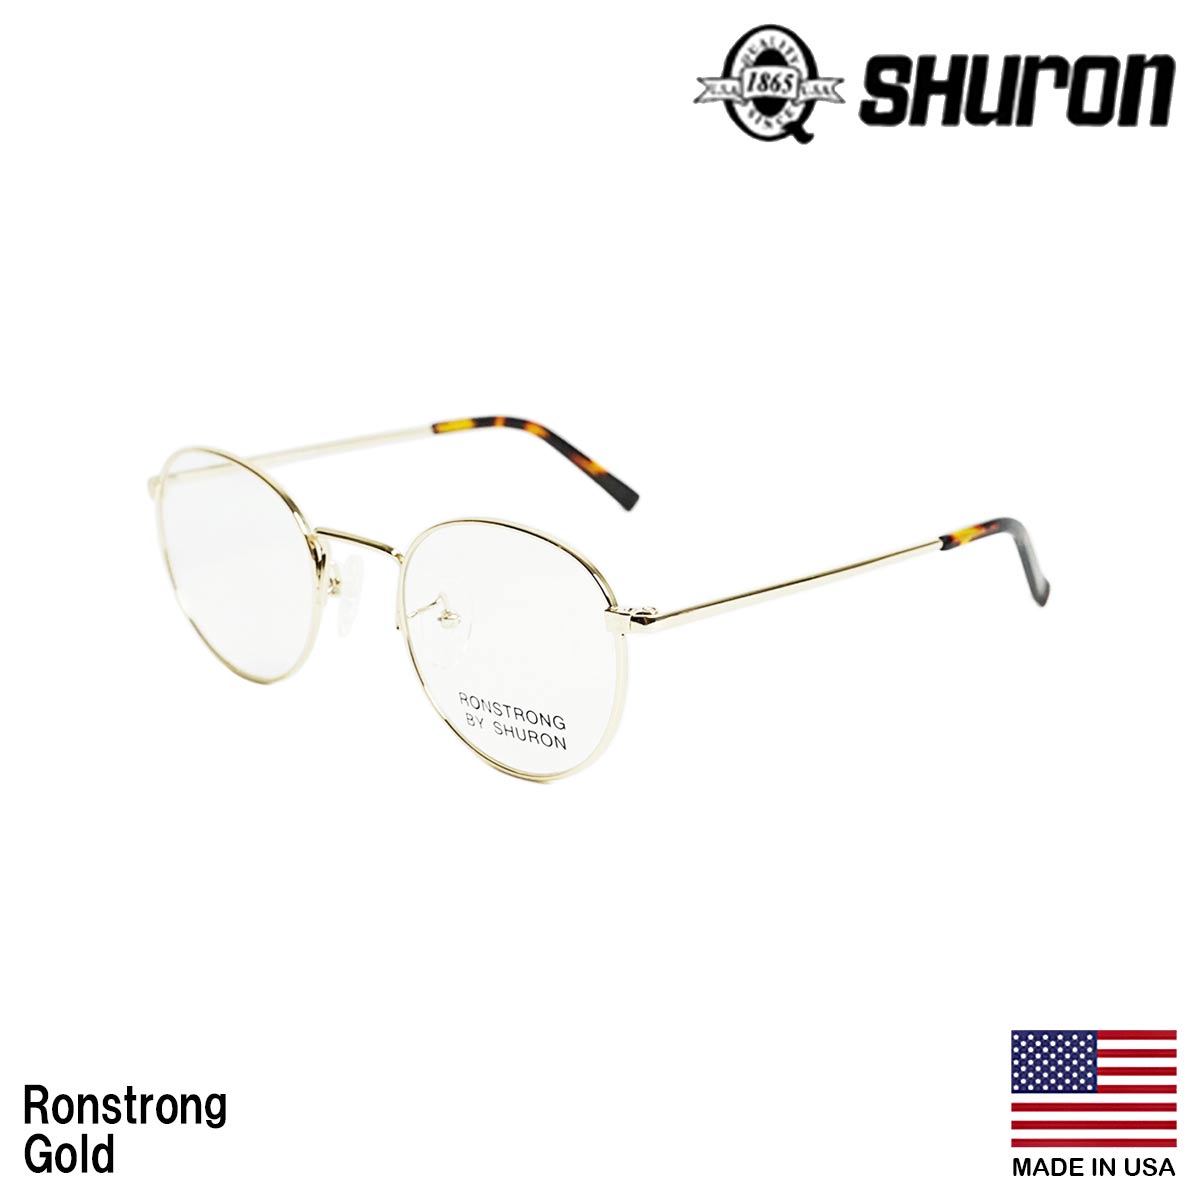 シュロン SHURON メガネ フレーム ロンストロング 眼鏡 アメリカ製 米国製 ボストン メタル...